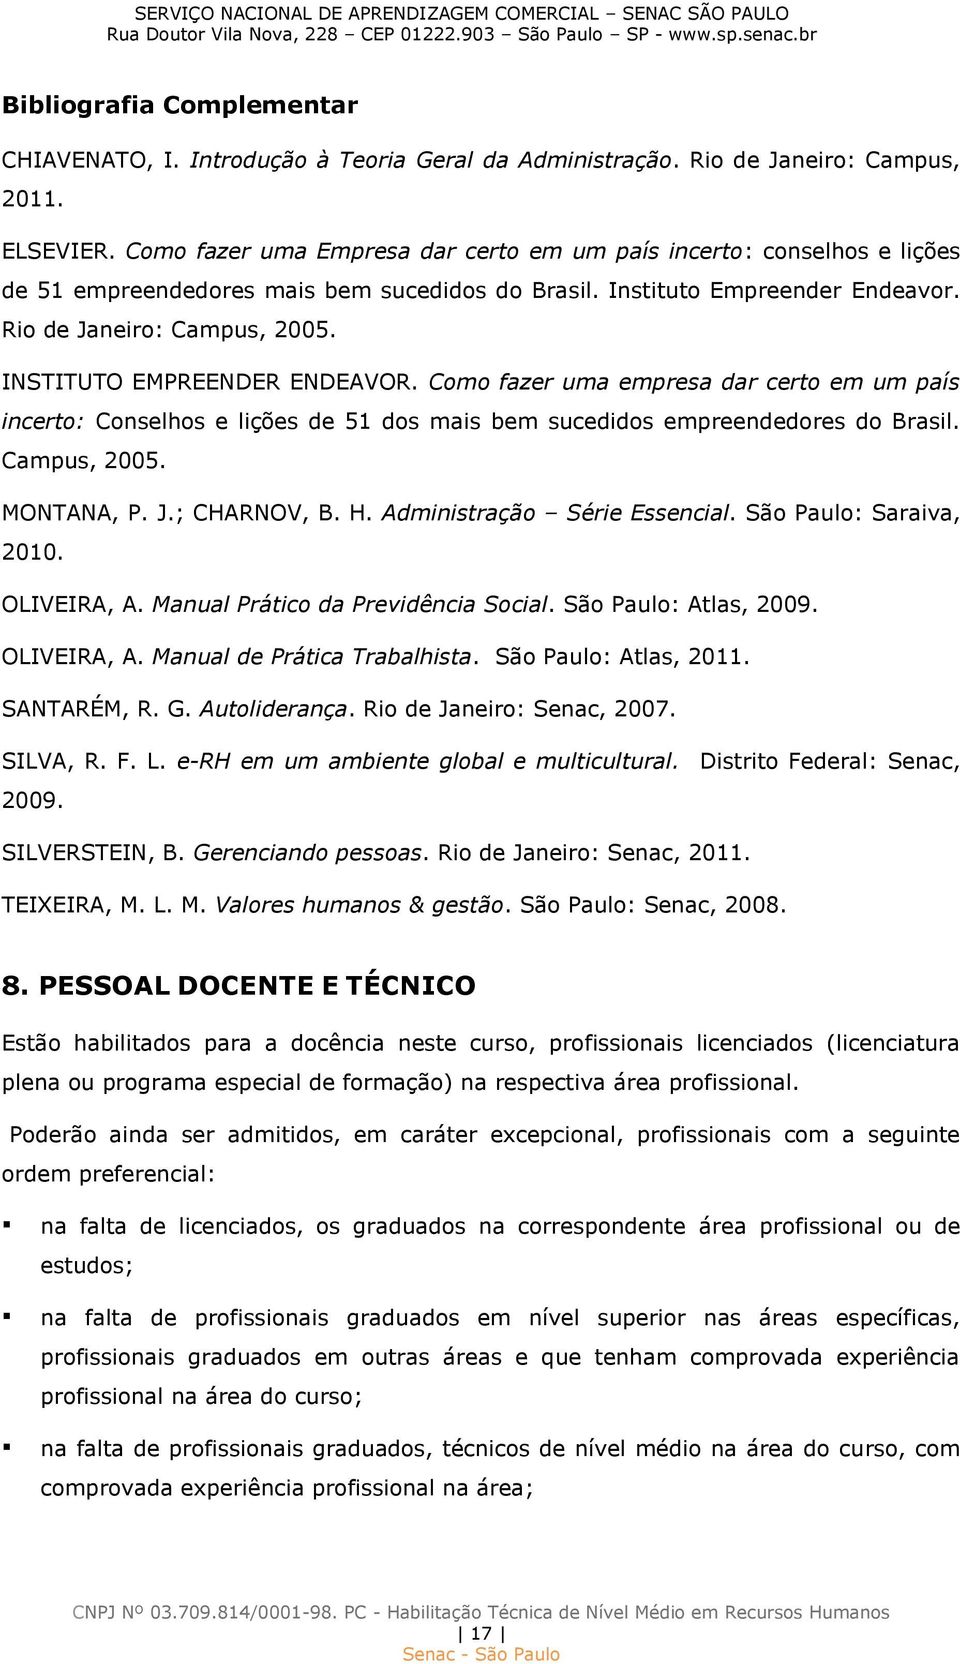 INSTITUTO EMPREENDER ENDEAVOR. Como fazer uma empresa dar certo em um país incerto: Conselhos e lições de 51 dos mais bem sucedidos empreendedores do Brasil. Campus, 2005. MONTANA, P. J.; CHARNOV, B.